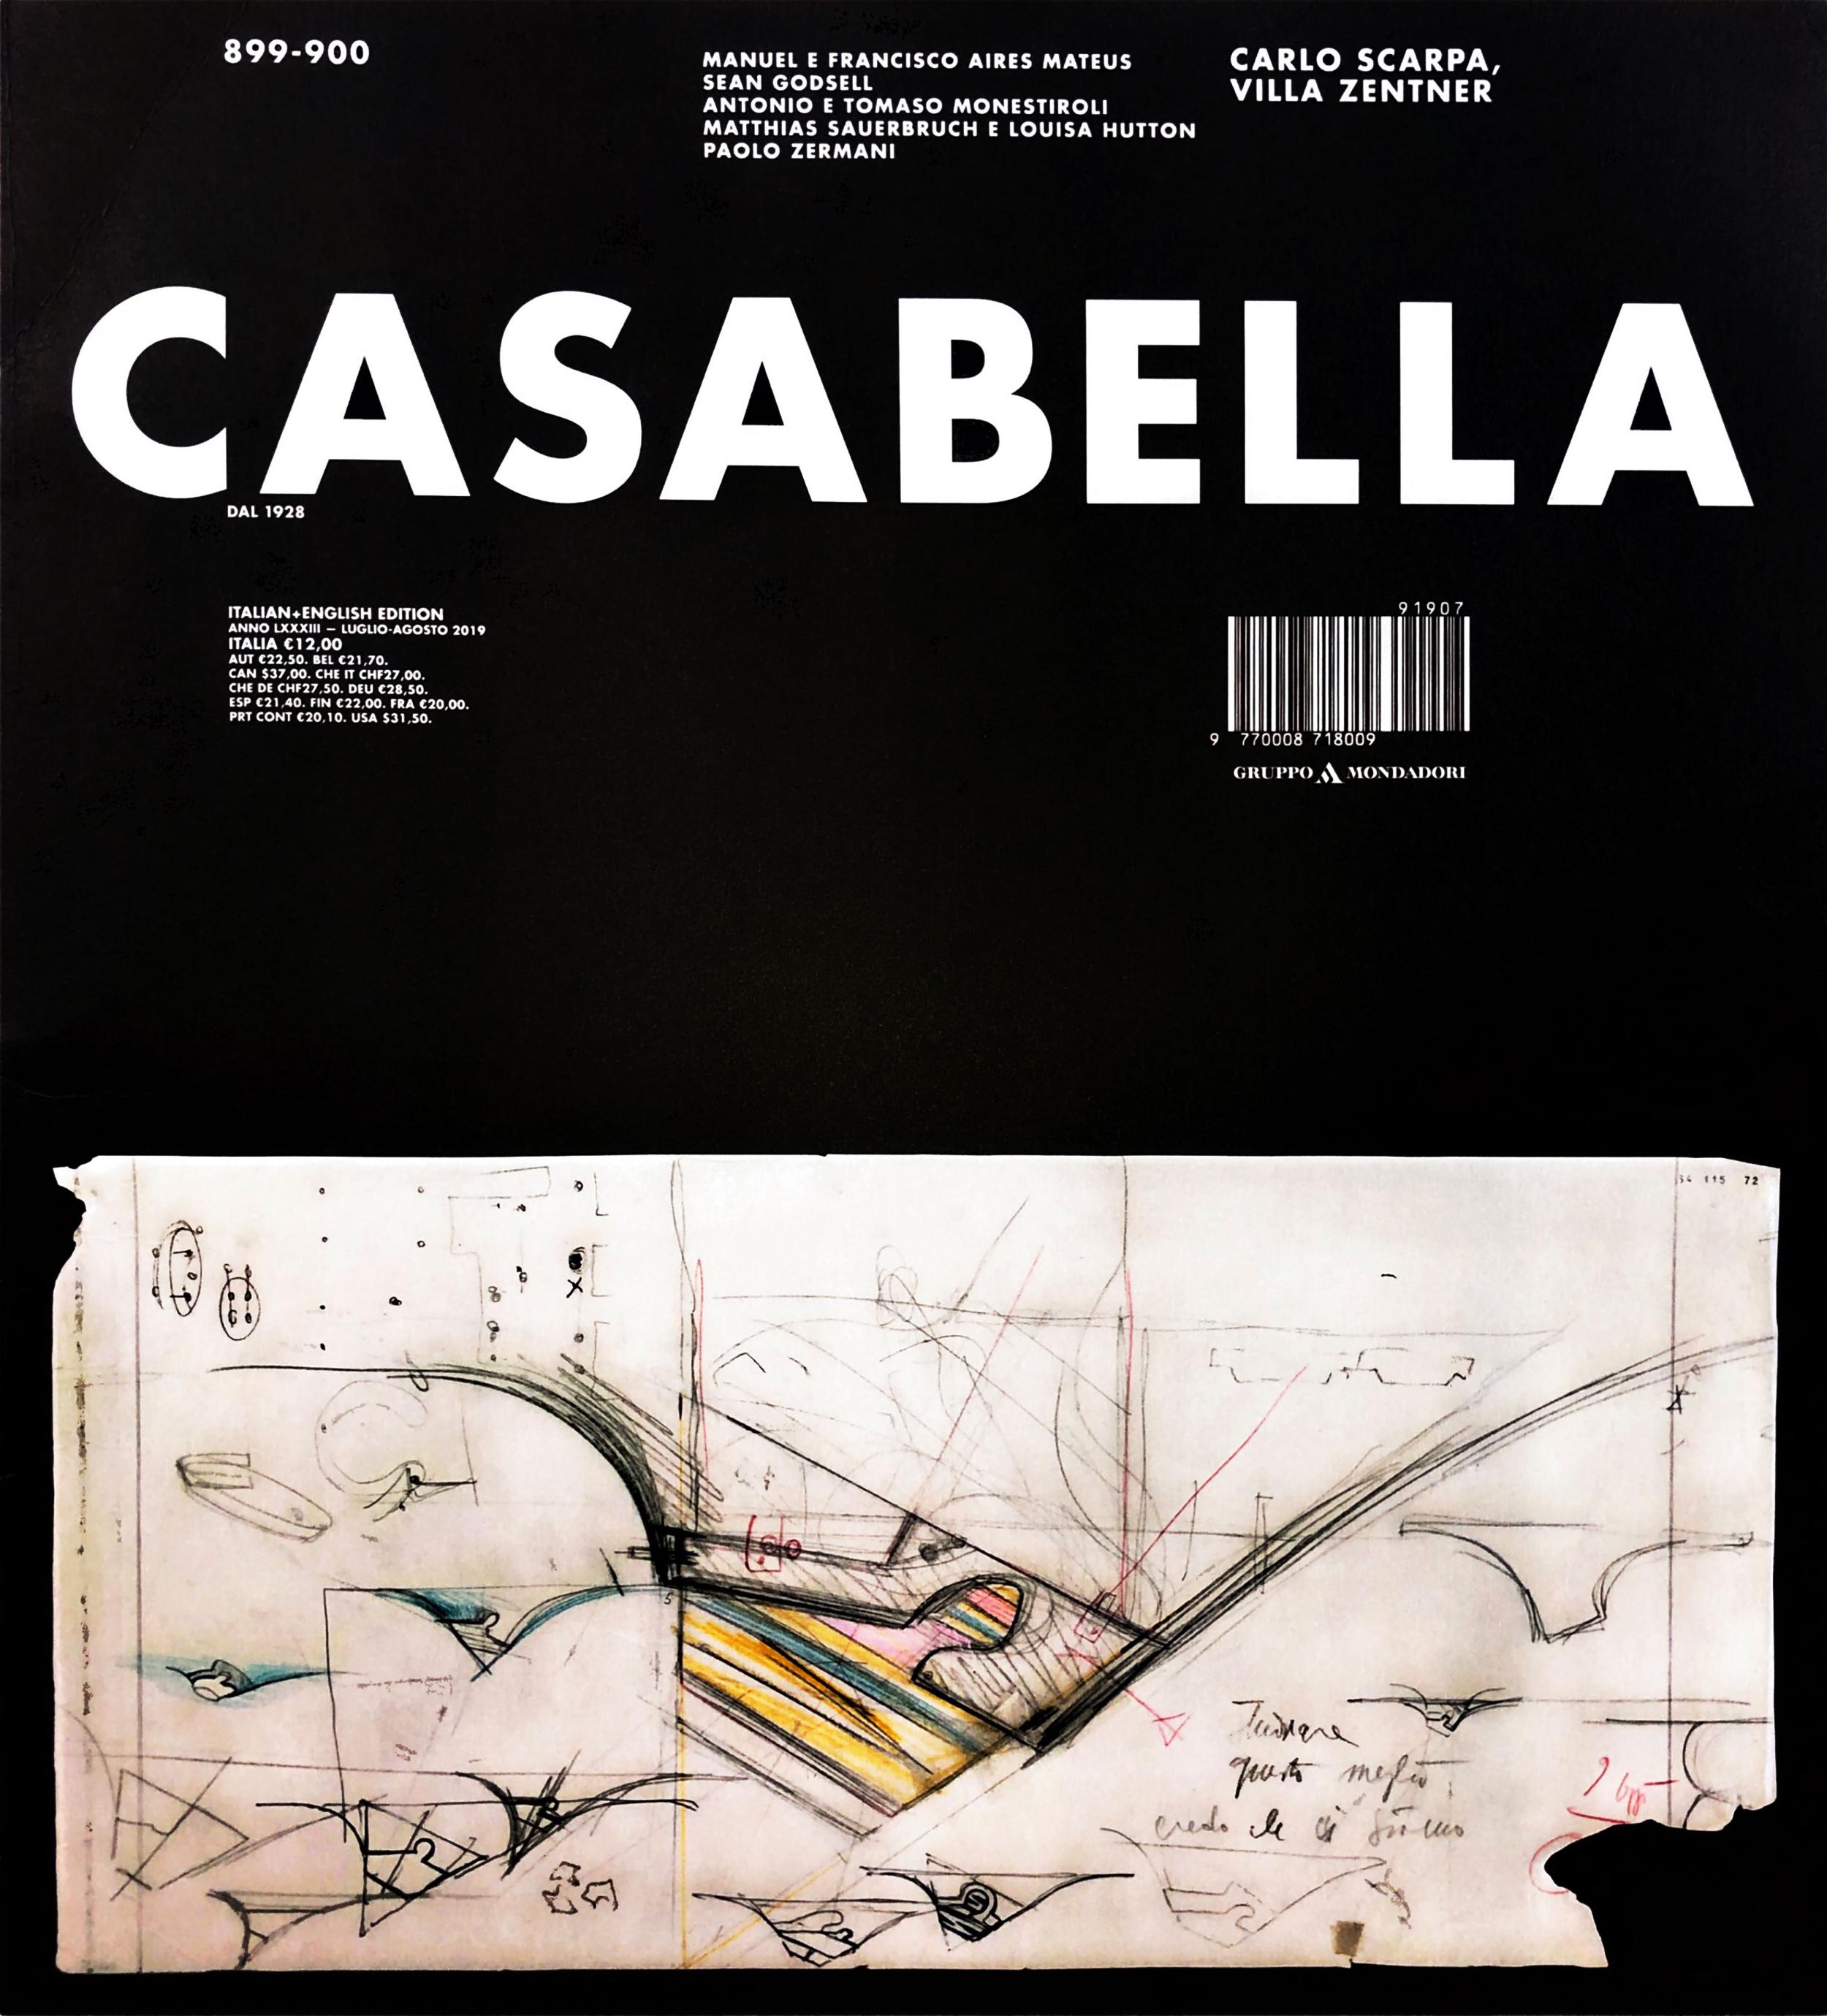 La nascita dell’architettura dallo spirito di dramma / CASABELLA 899-900